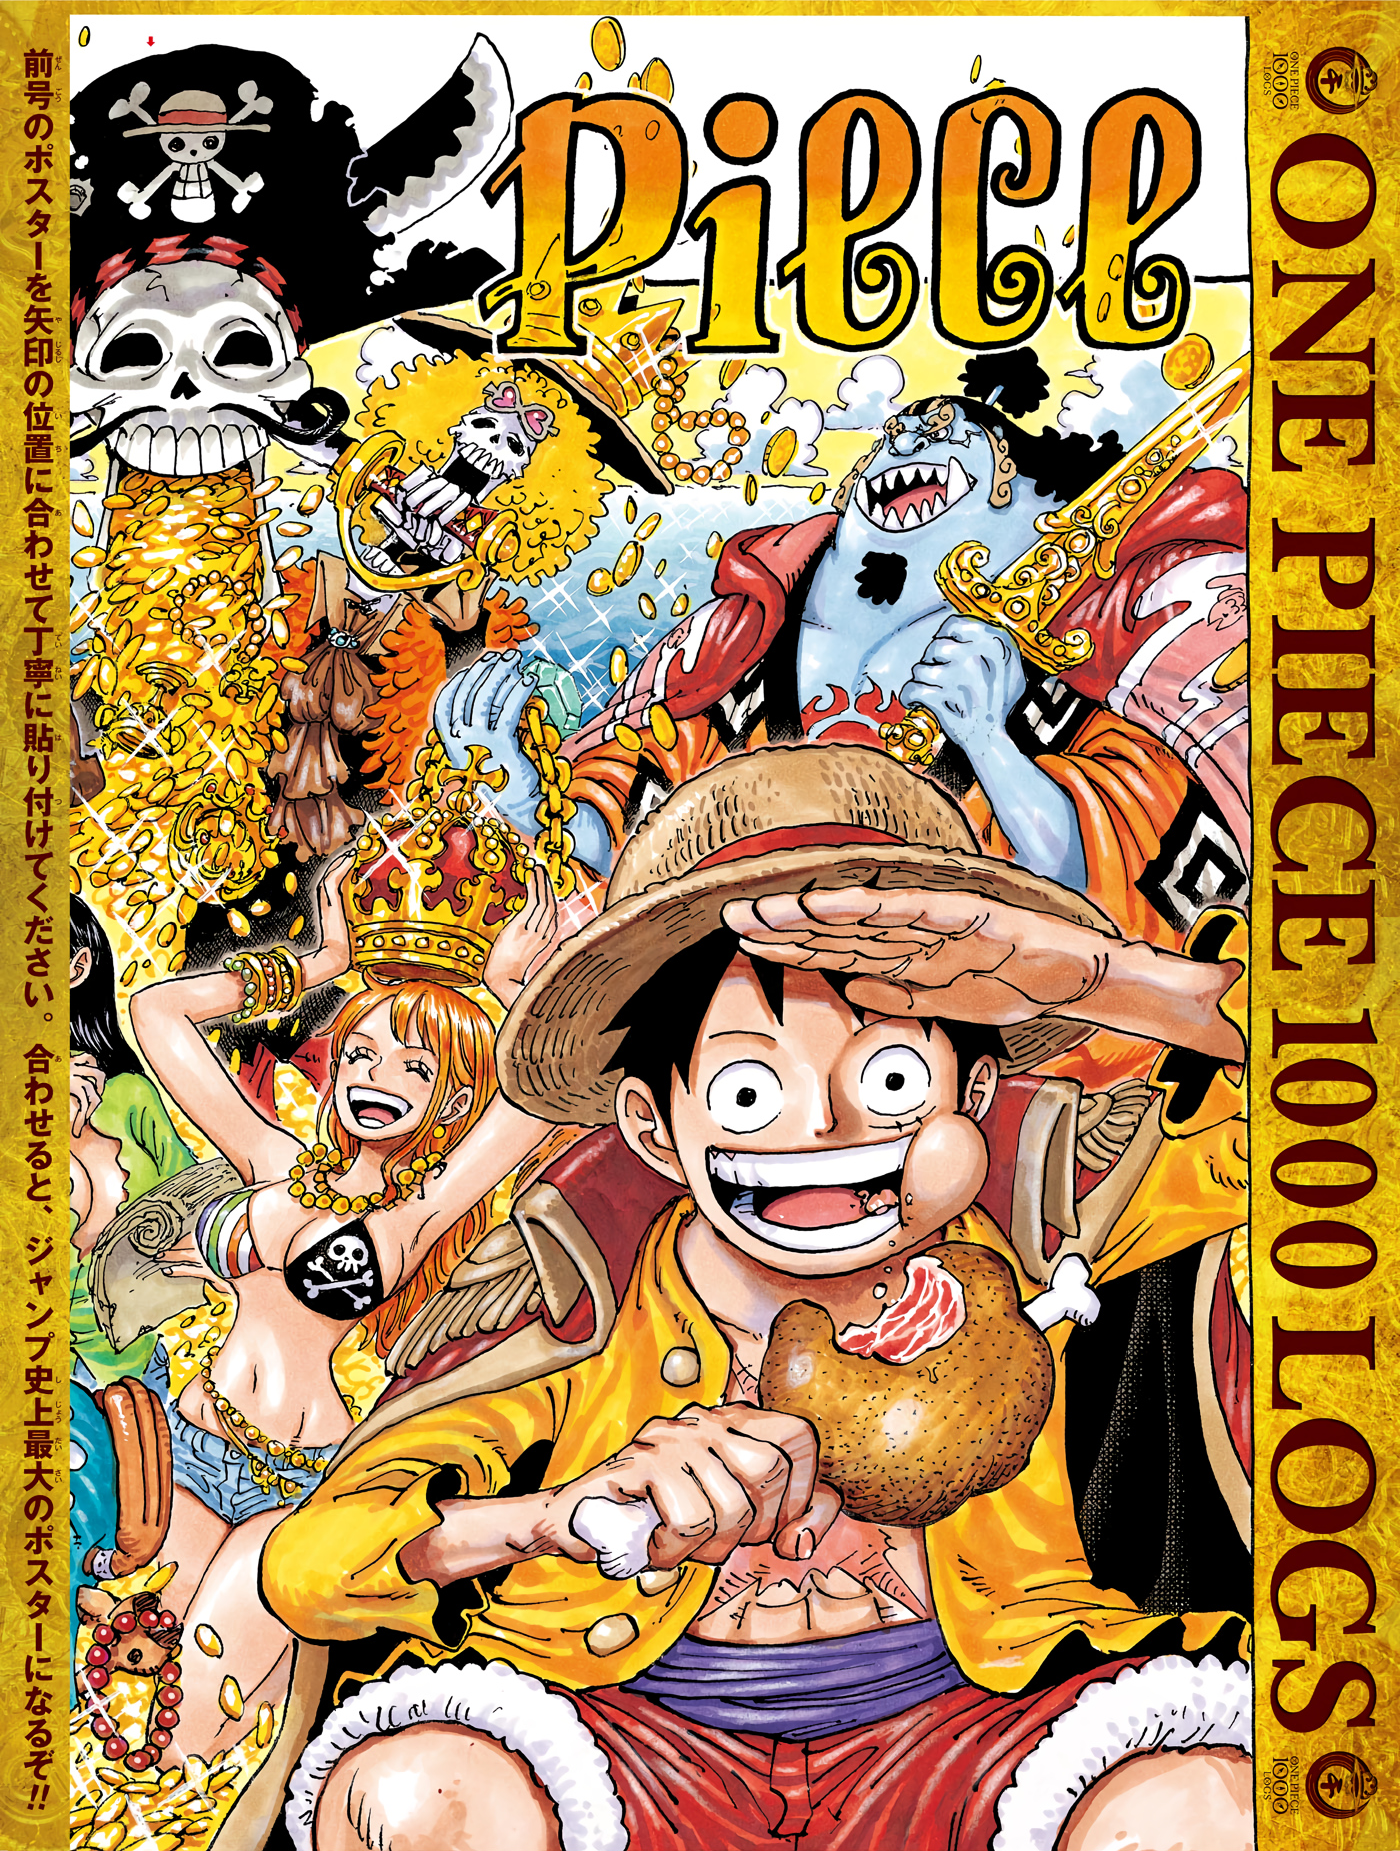 Cuándo y dónde leer el capítulo 1,057 de One Piece?